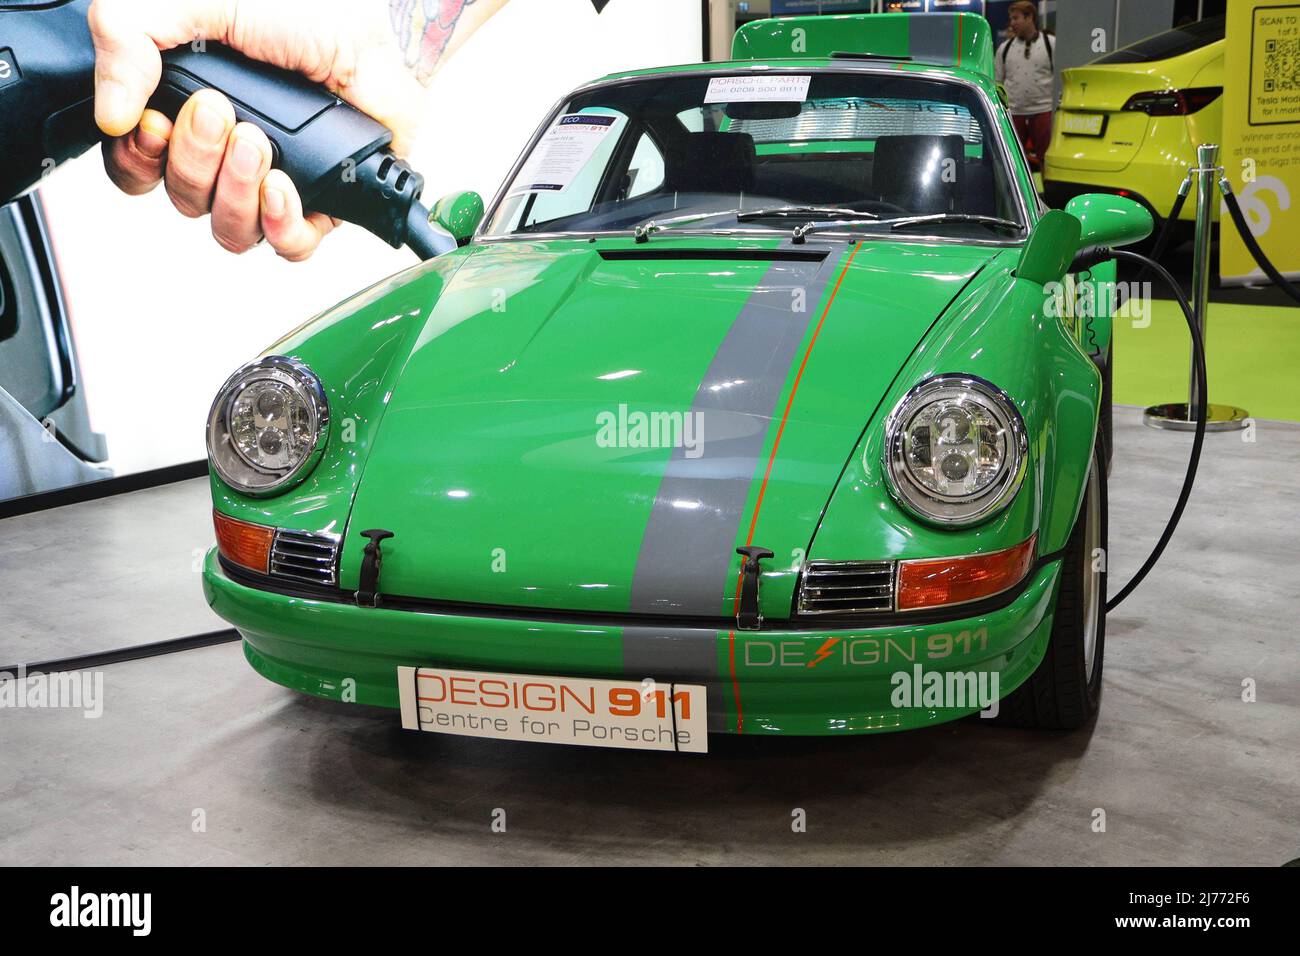 Porsche Design 911 electric Stock Photo